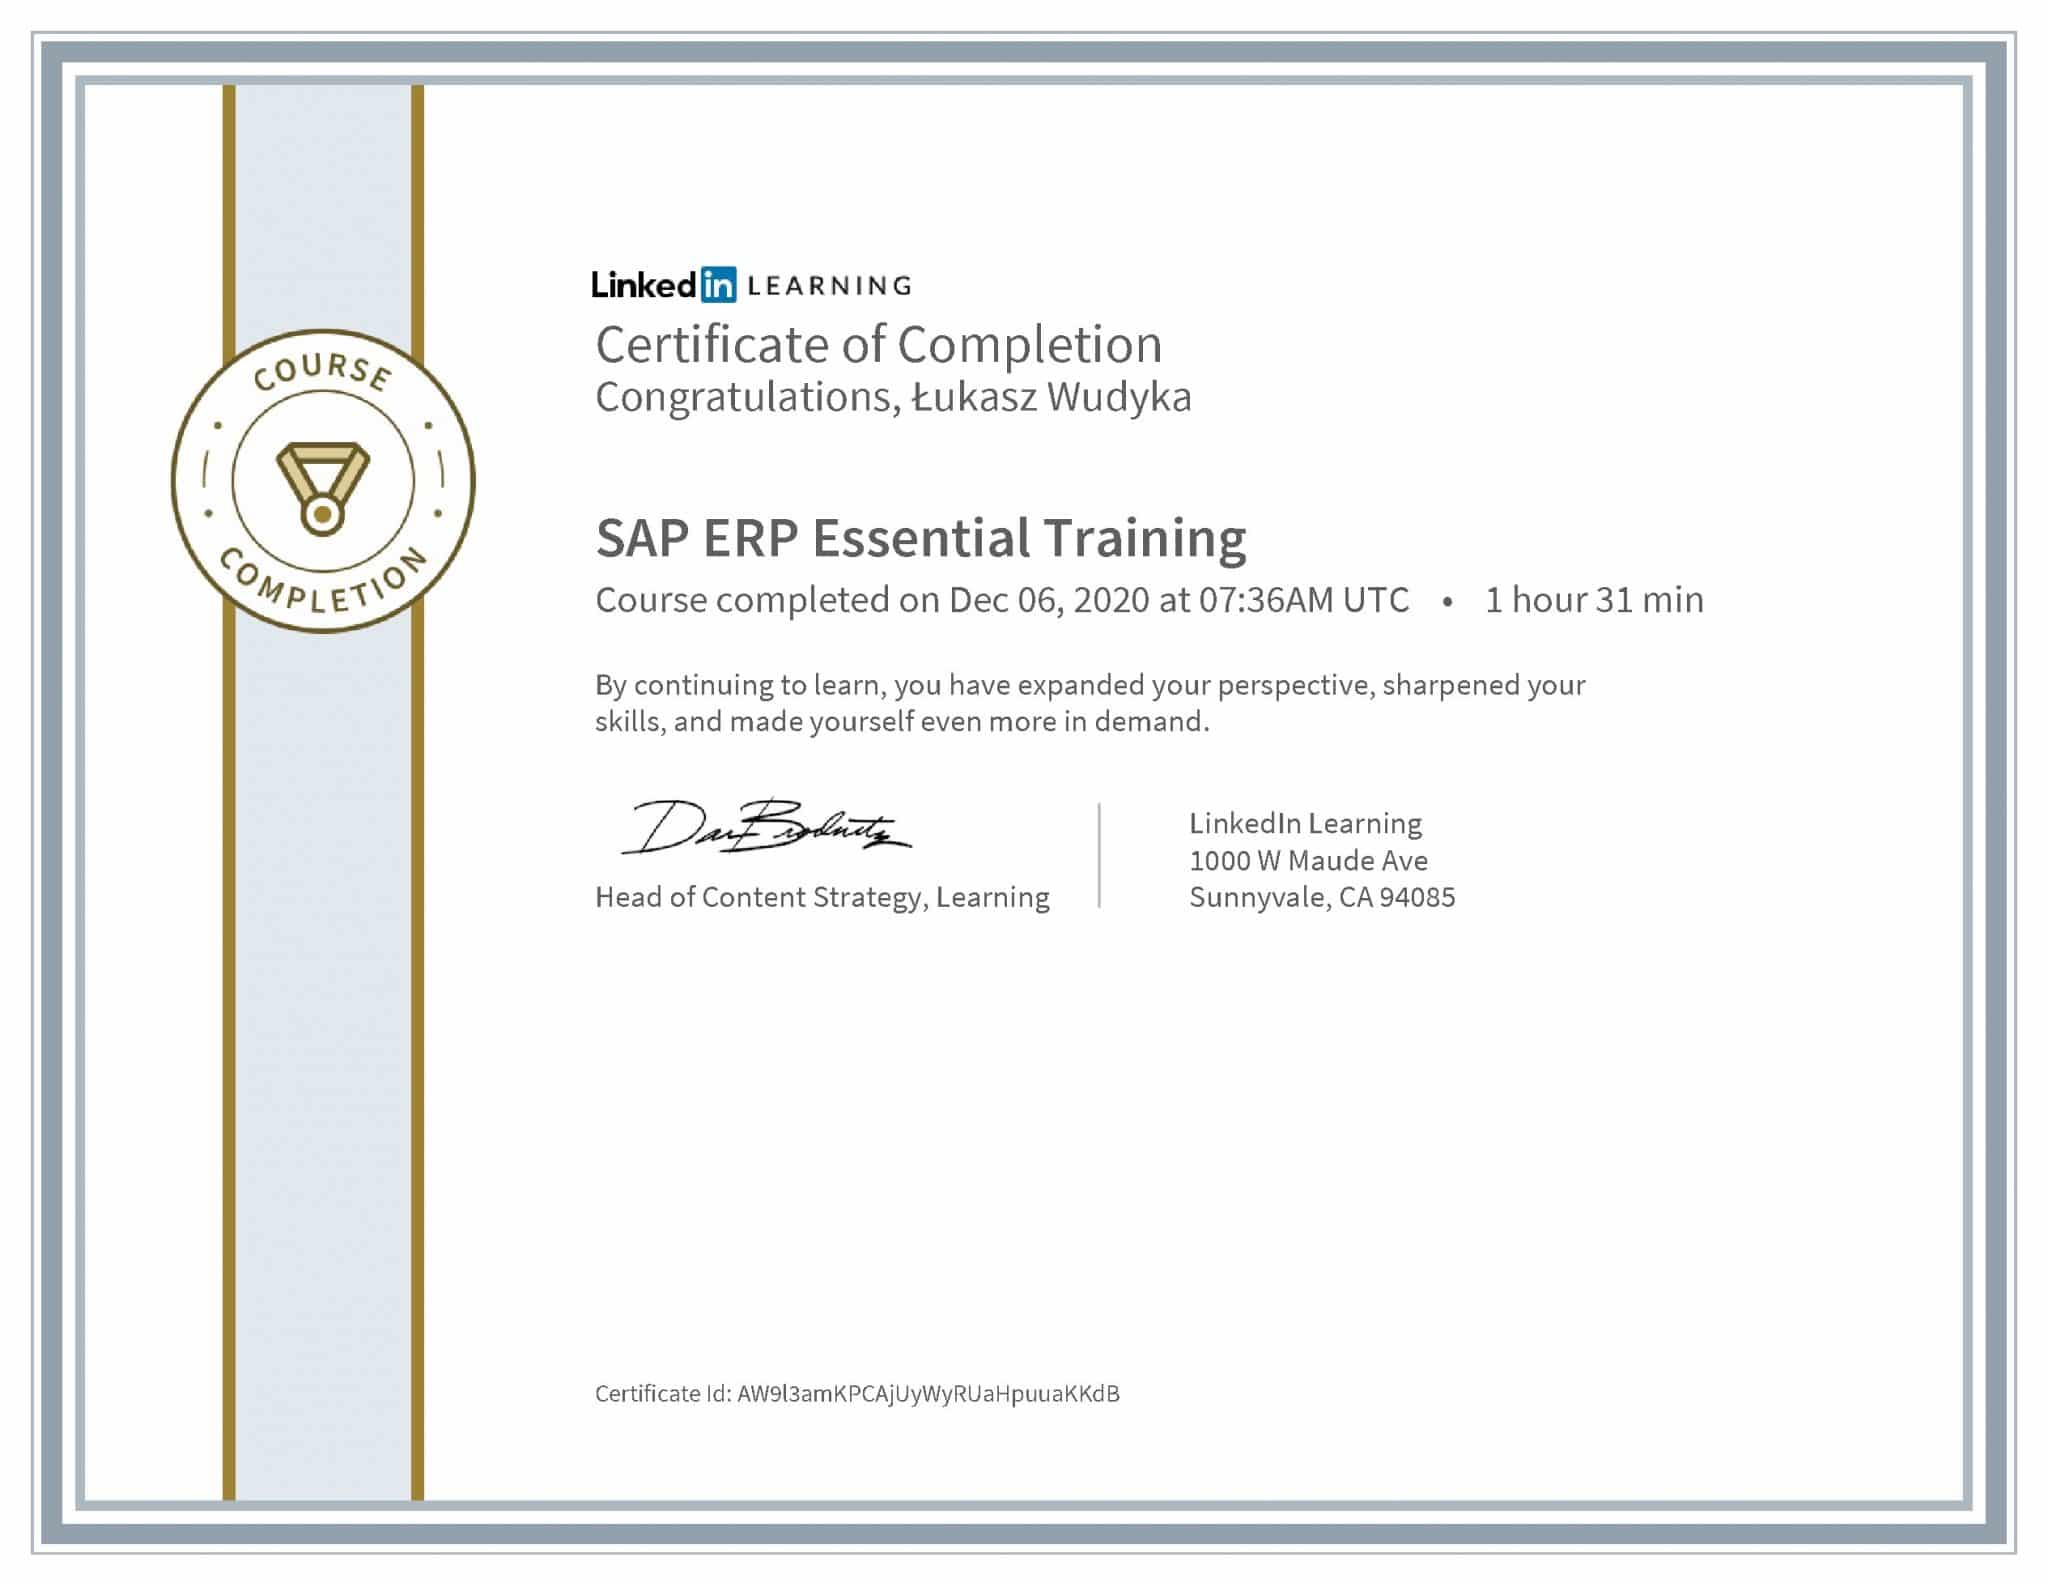 Łukasz Wudyka certyfikat LinkedIn SAP ERP Essential Training